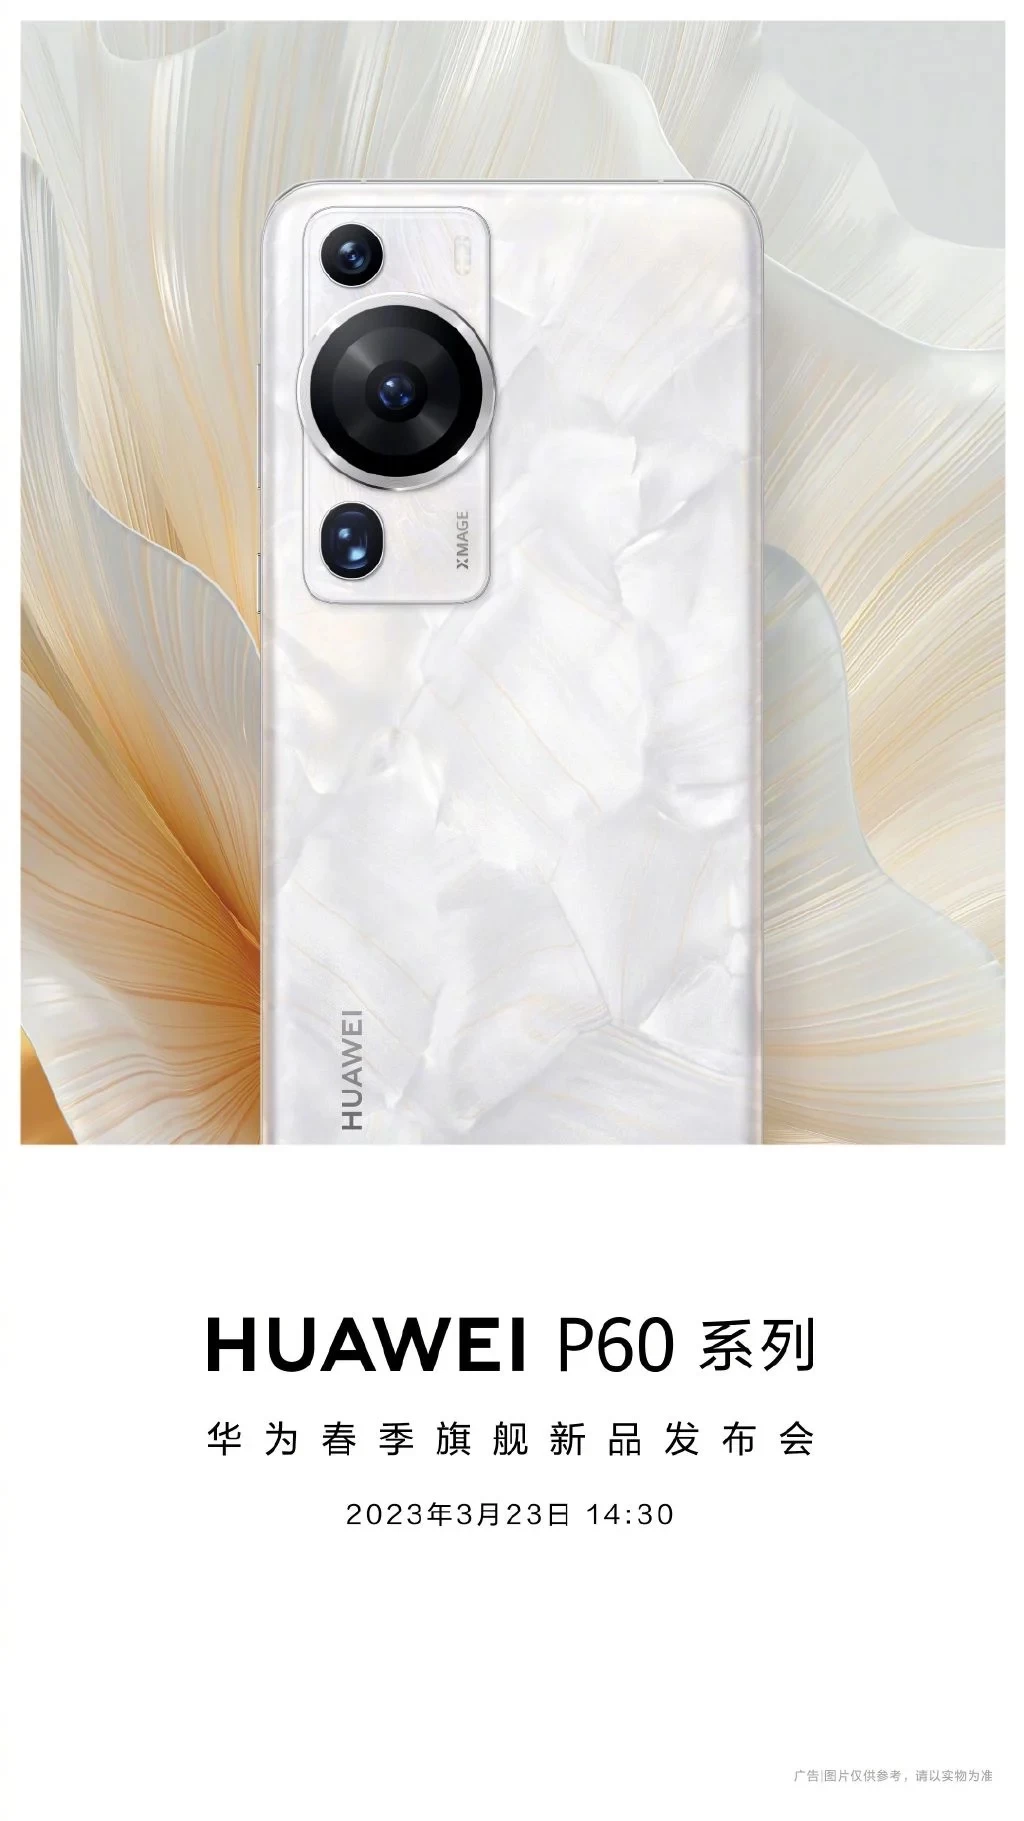 huawei teaser | Huawei | Huawei เผยภาพ Huawei P60 ดีไซน์กล้องใหม่ สีขาว สวยงาม!